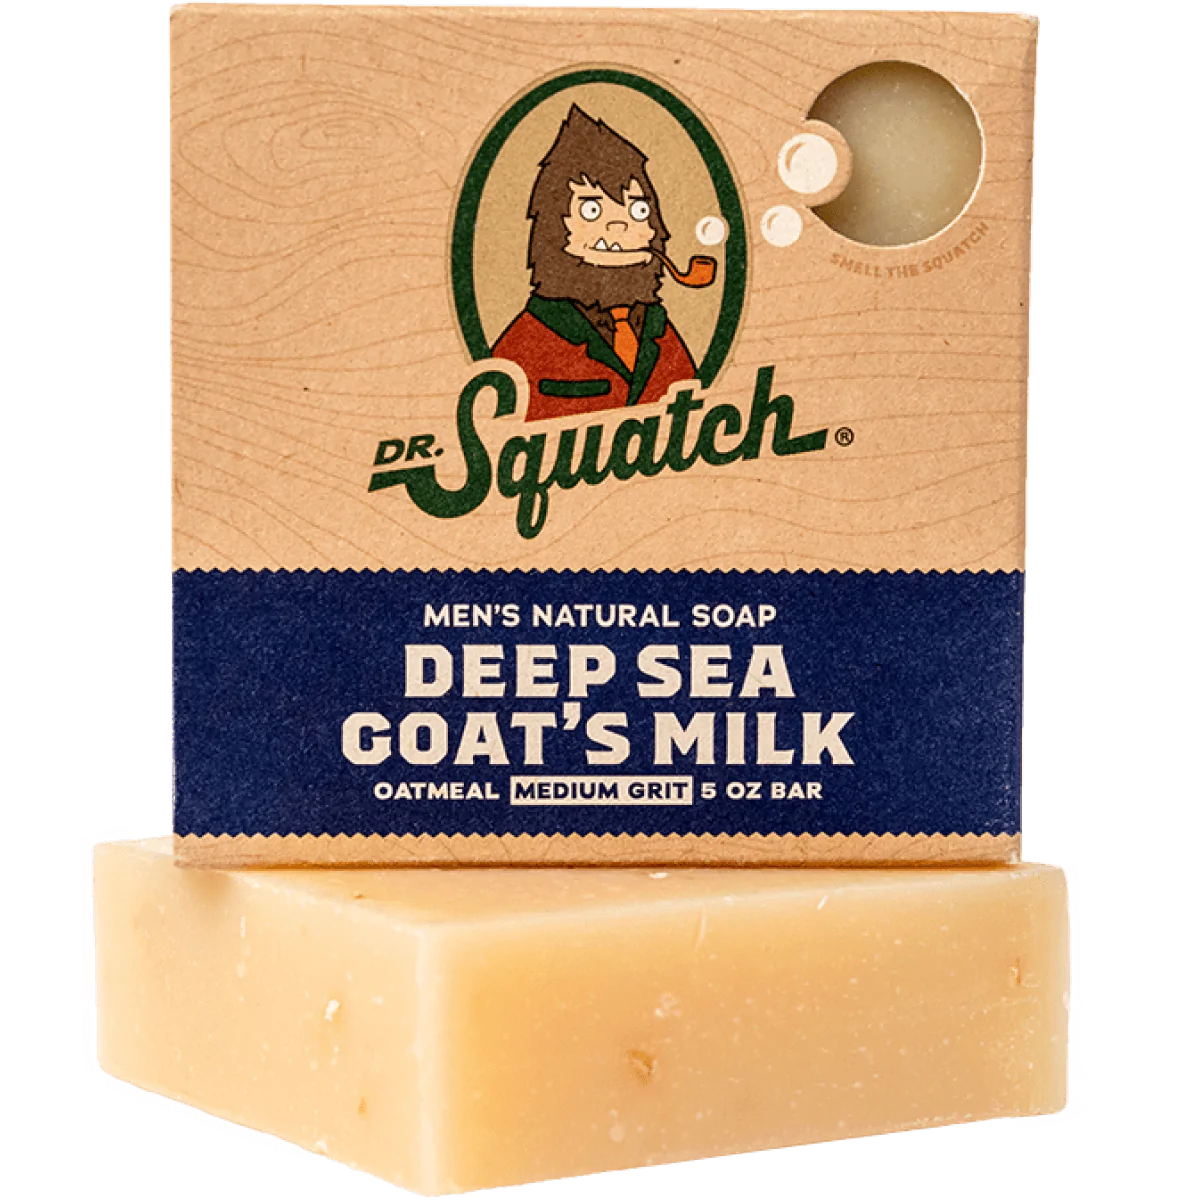 Deep Sea Goat's Milk Bar Soap by Dr. Squatch--Lemons and Limes Boutique